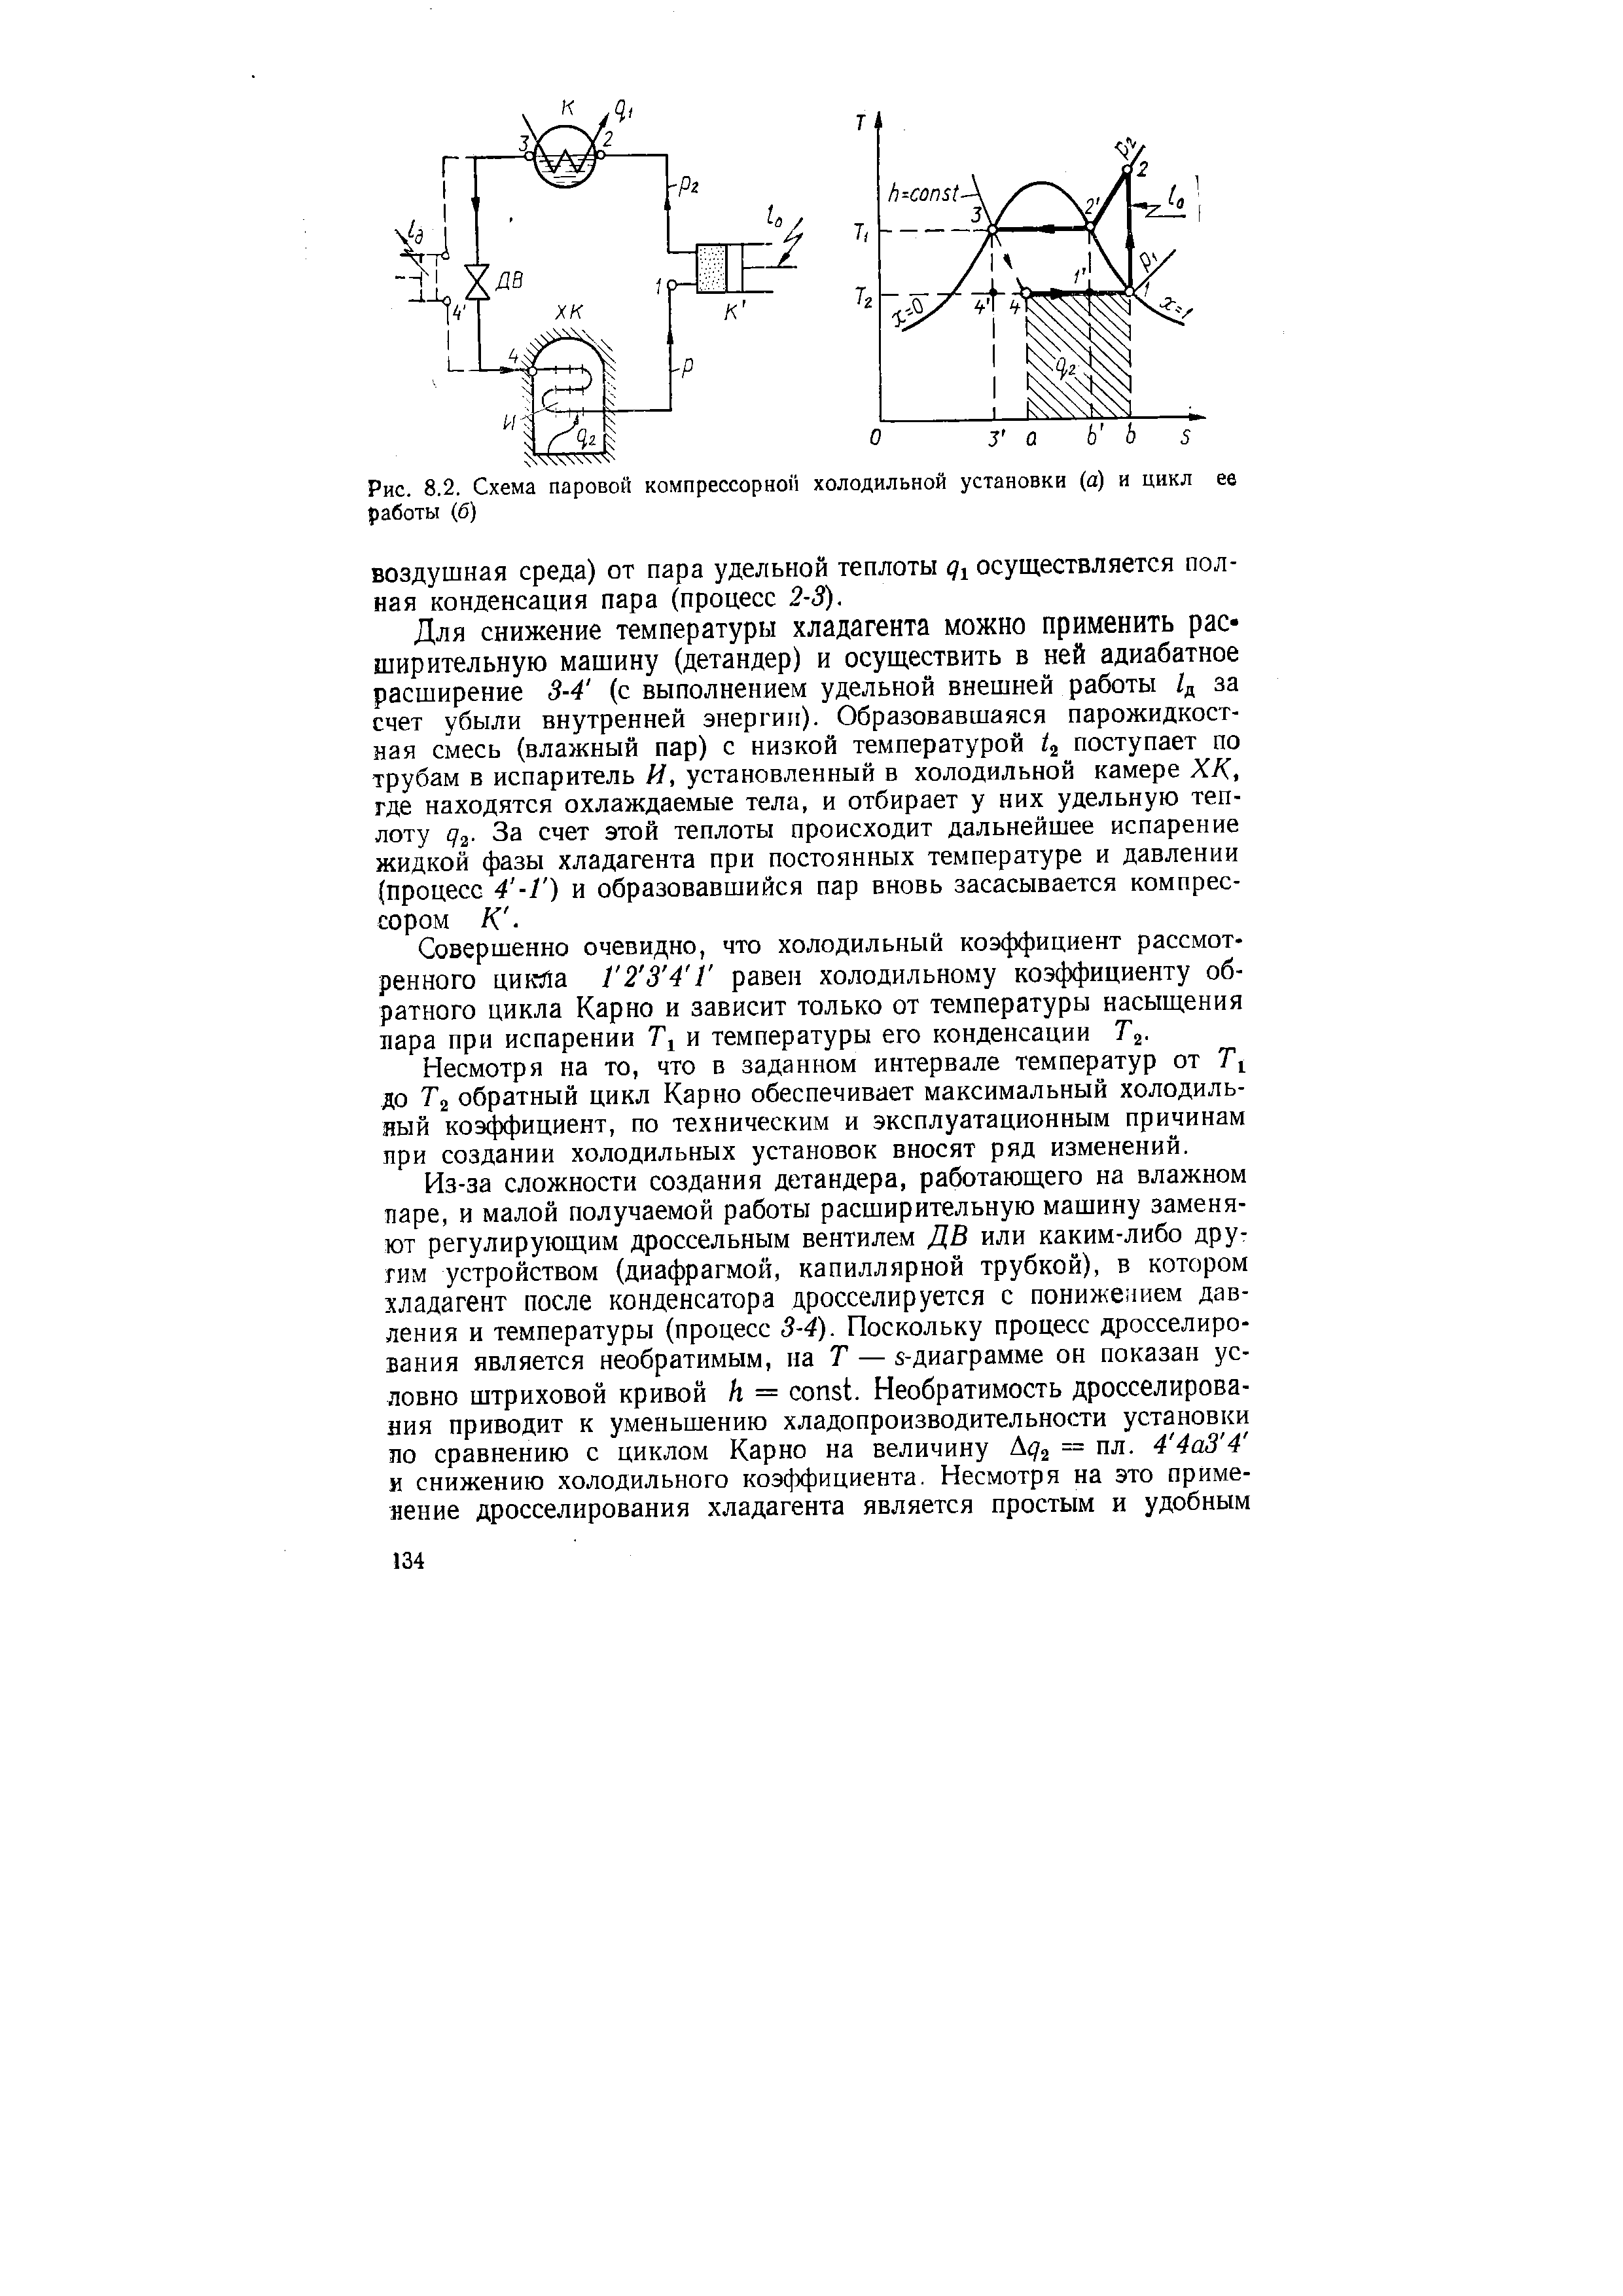 Рис. 8.2. Схема паровой компрессорной холодильной установки (а) н цикл ев работы (б)
